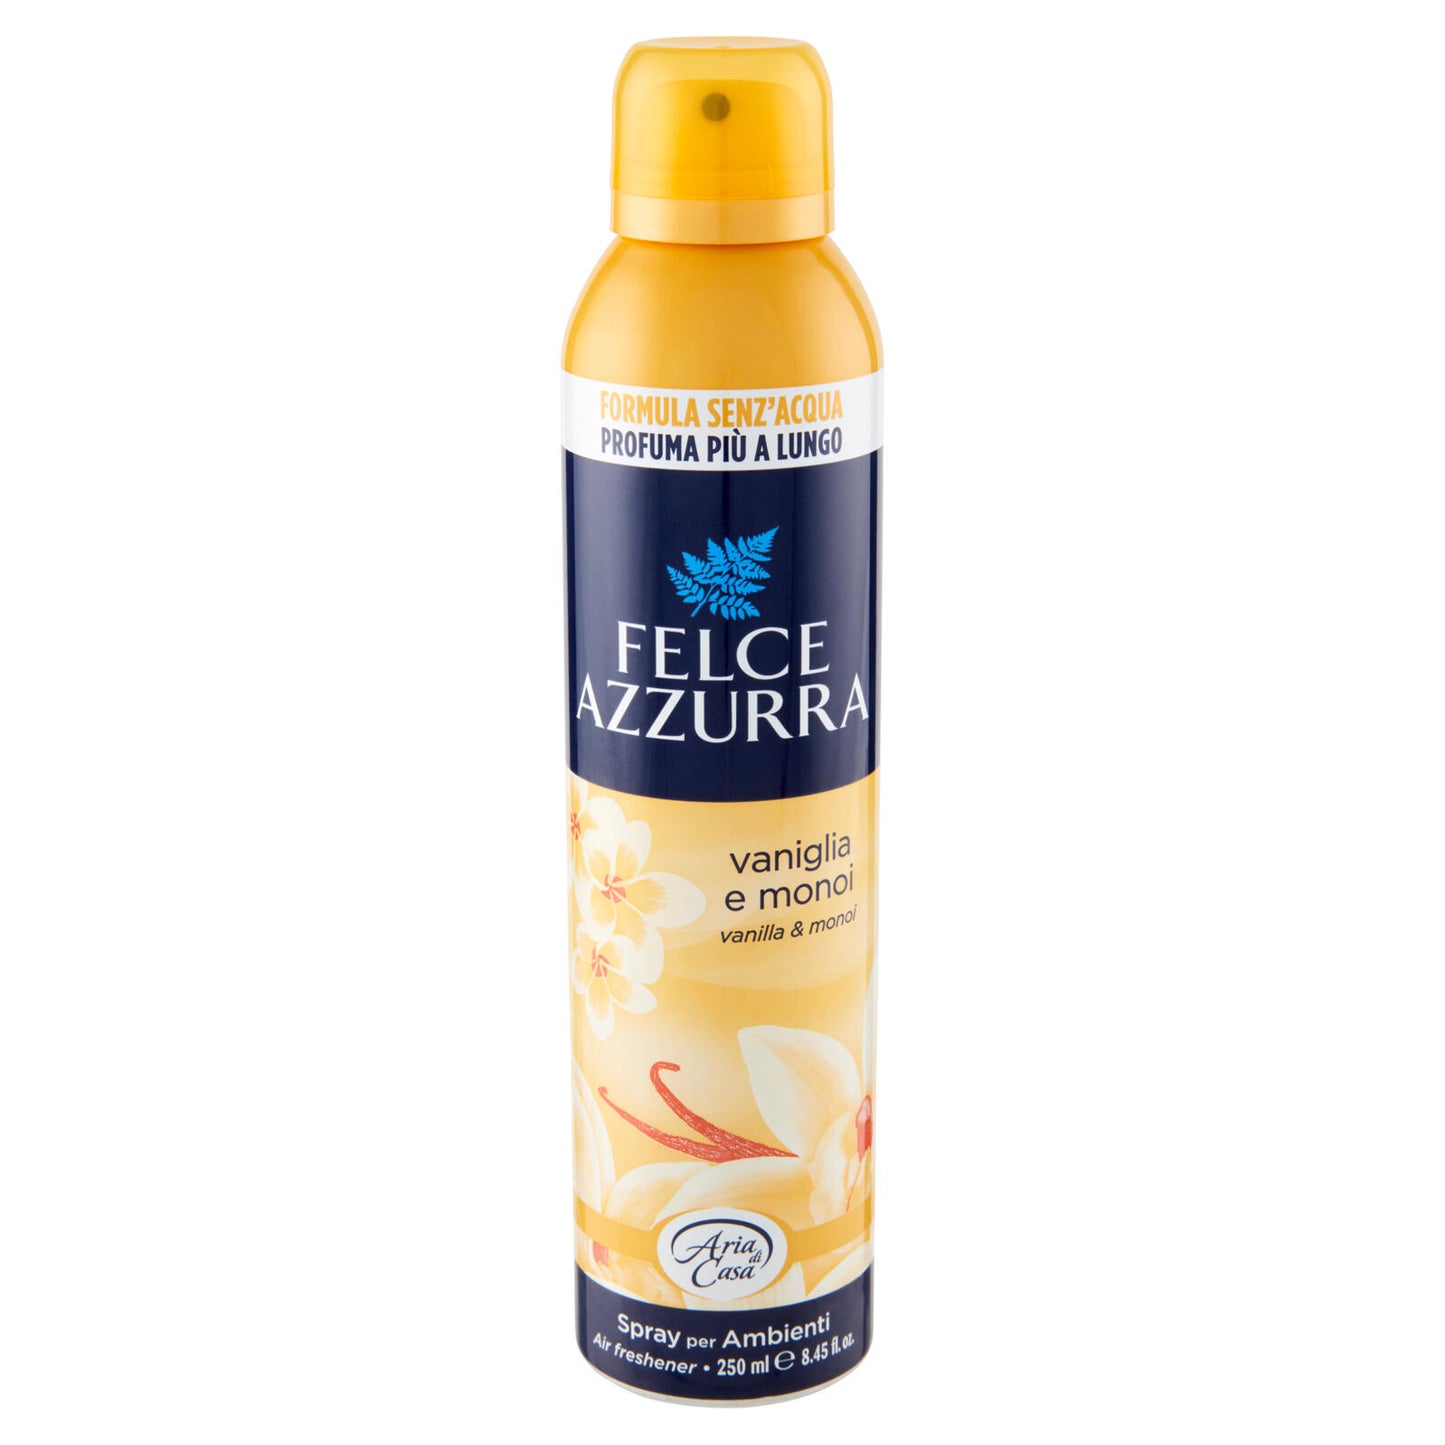 Felce Azzurra Aria di Casa vaniglia e monoi Spray per Ambienti 250 ml